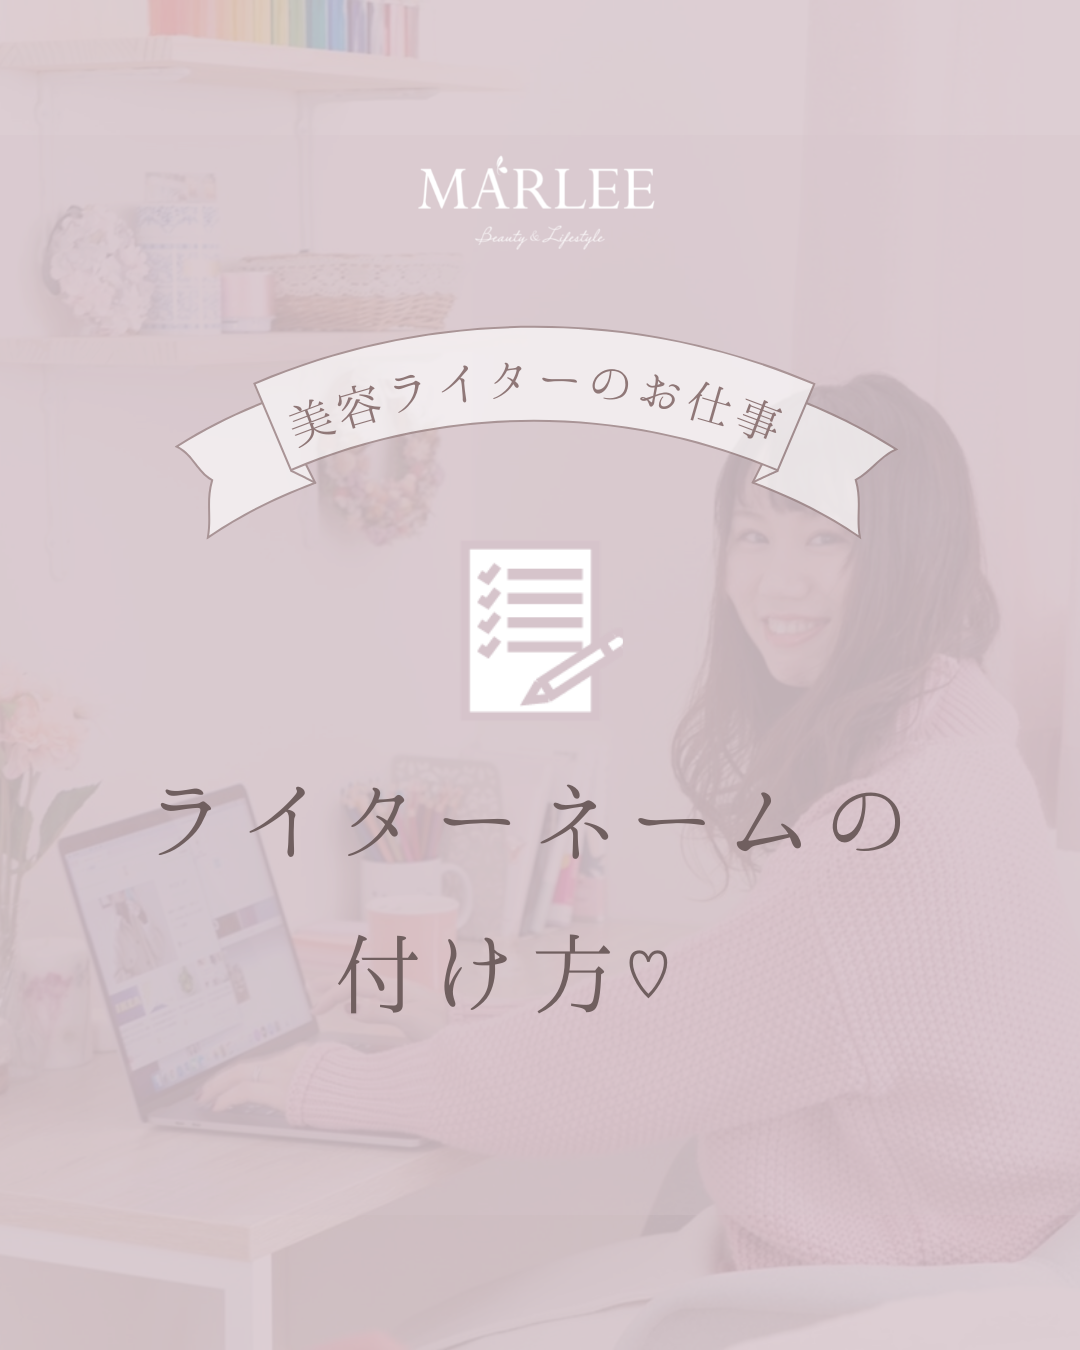 ライターネームの付け方 Marlee 美容ライター 美容家 ライター講師中村菜月ブログ